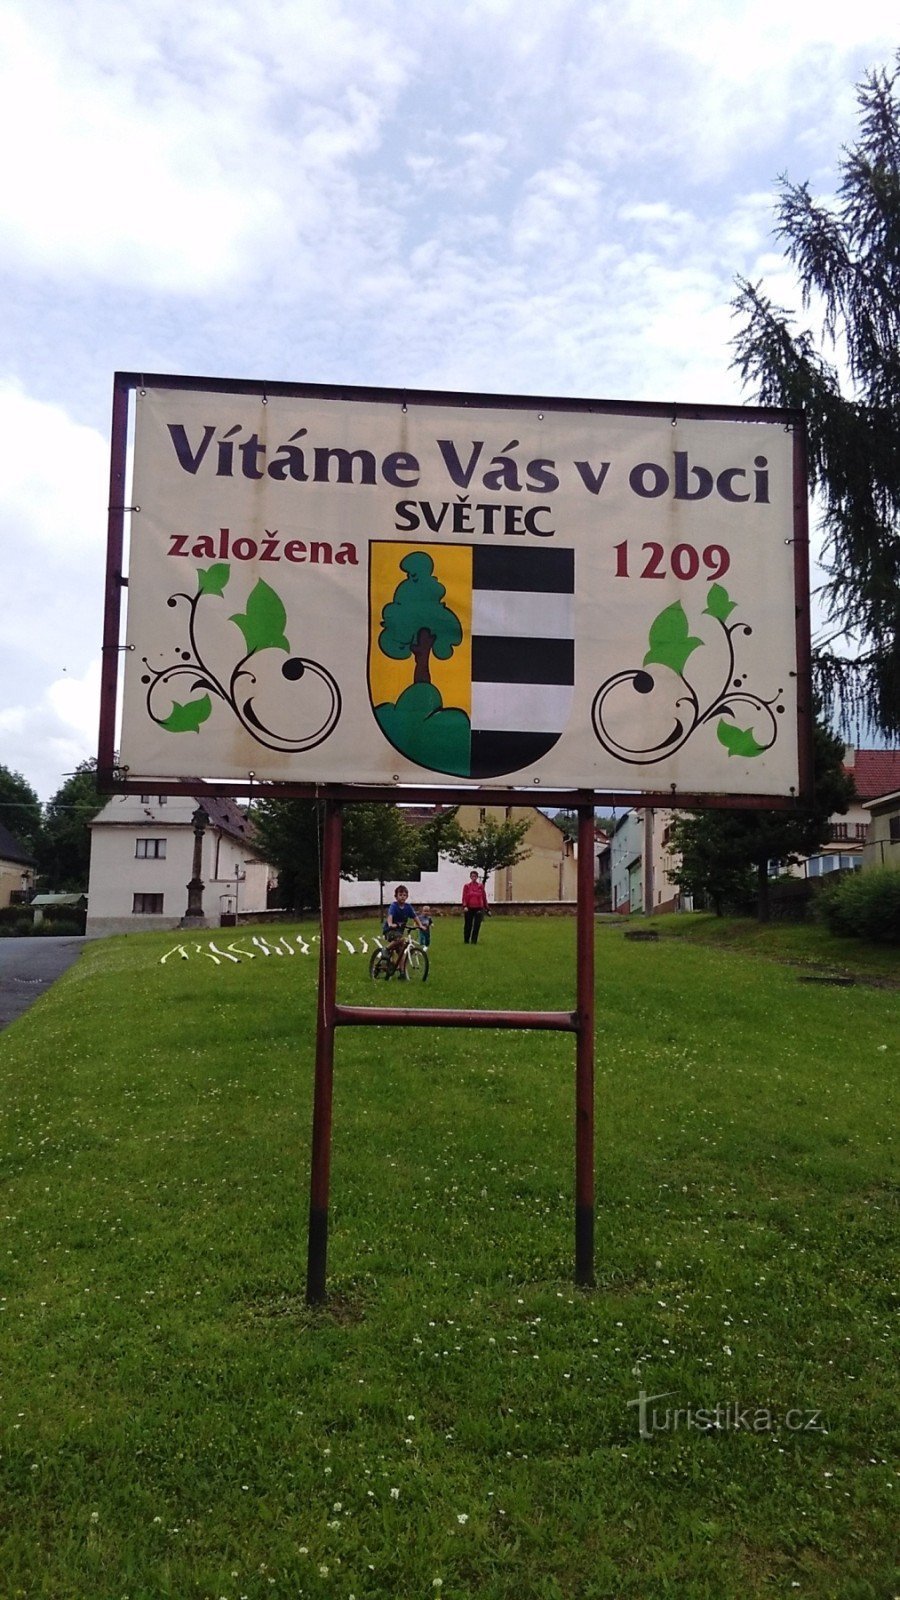 Il villaggio di Svetec